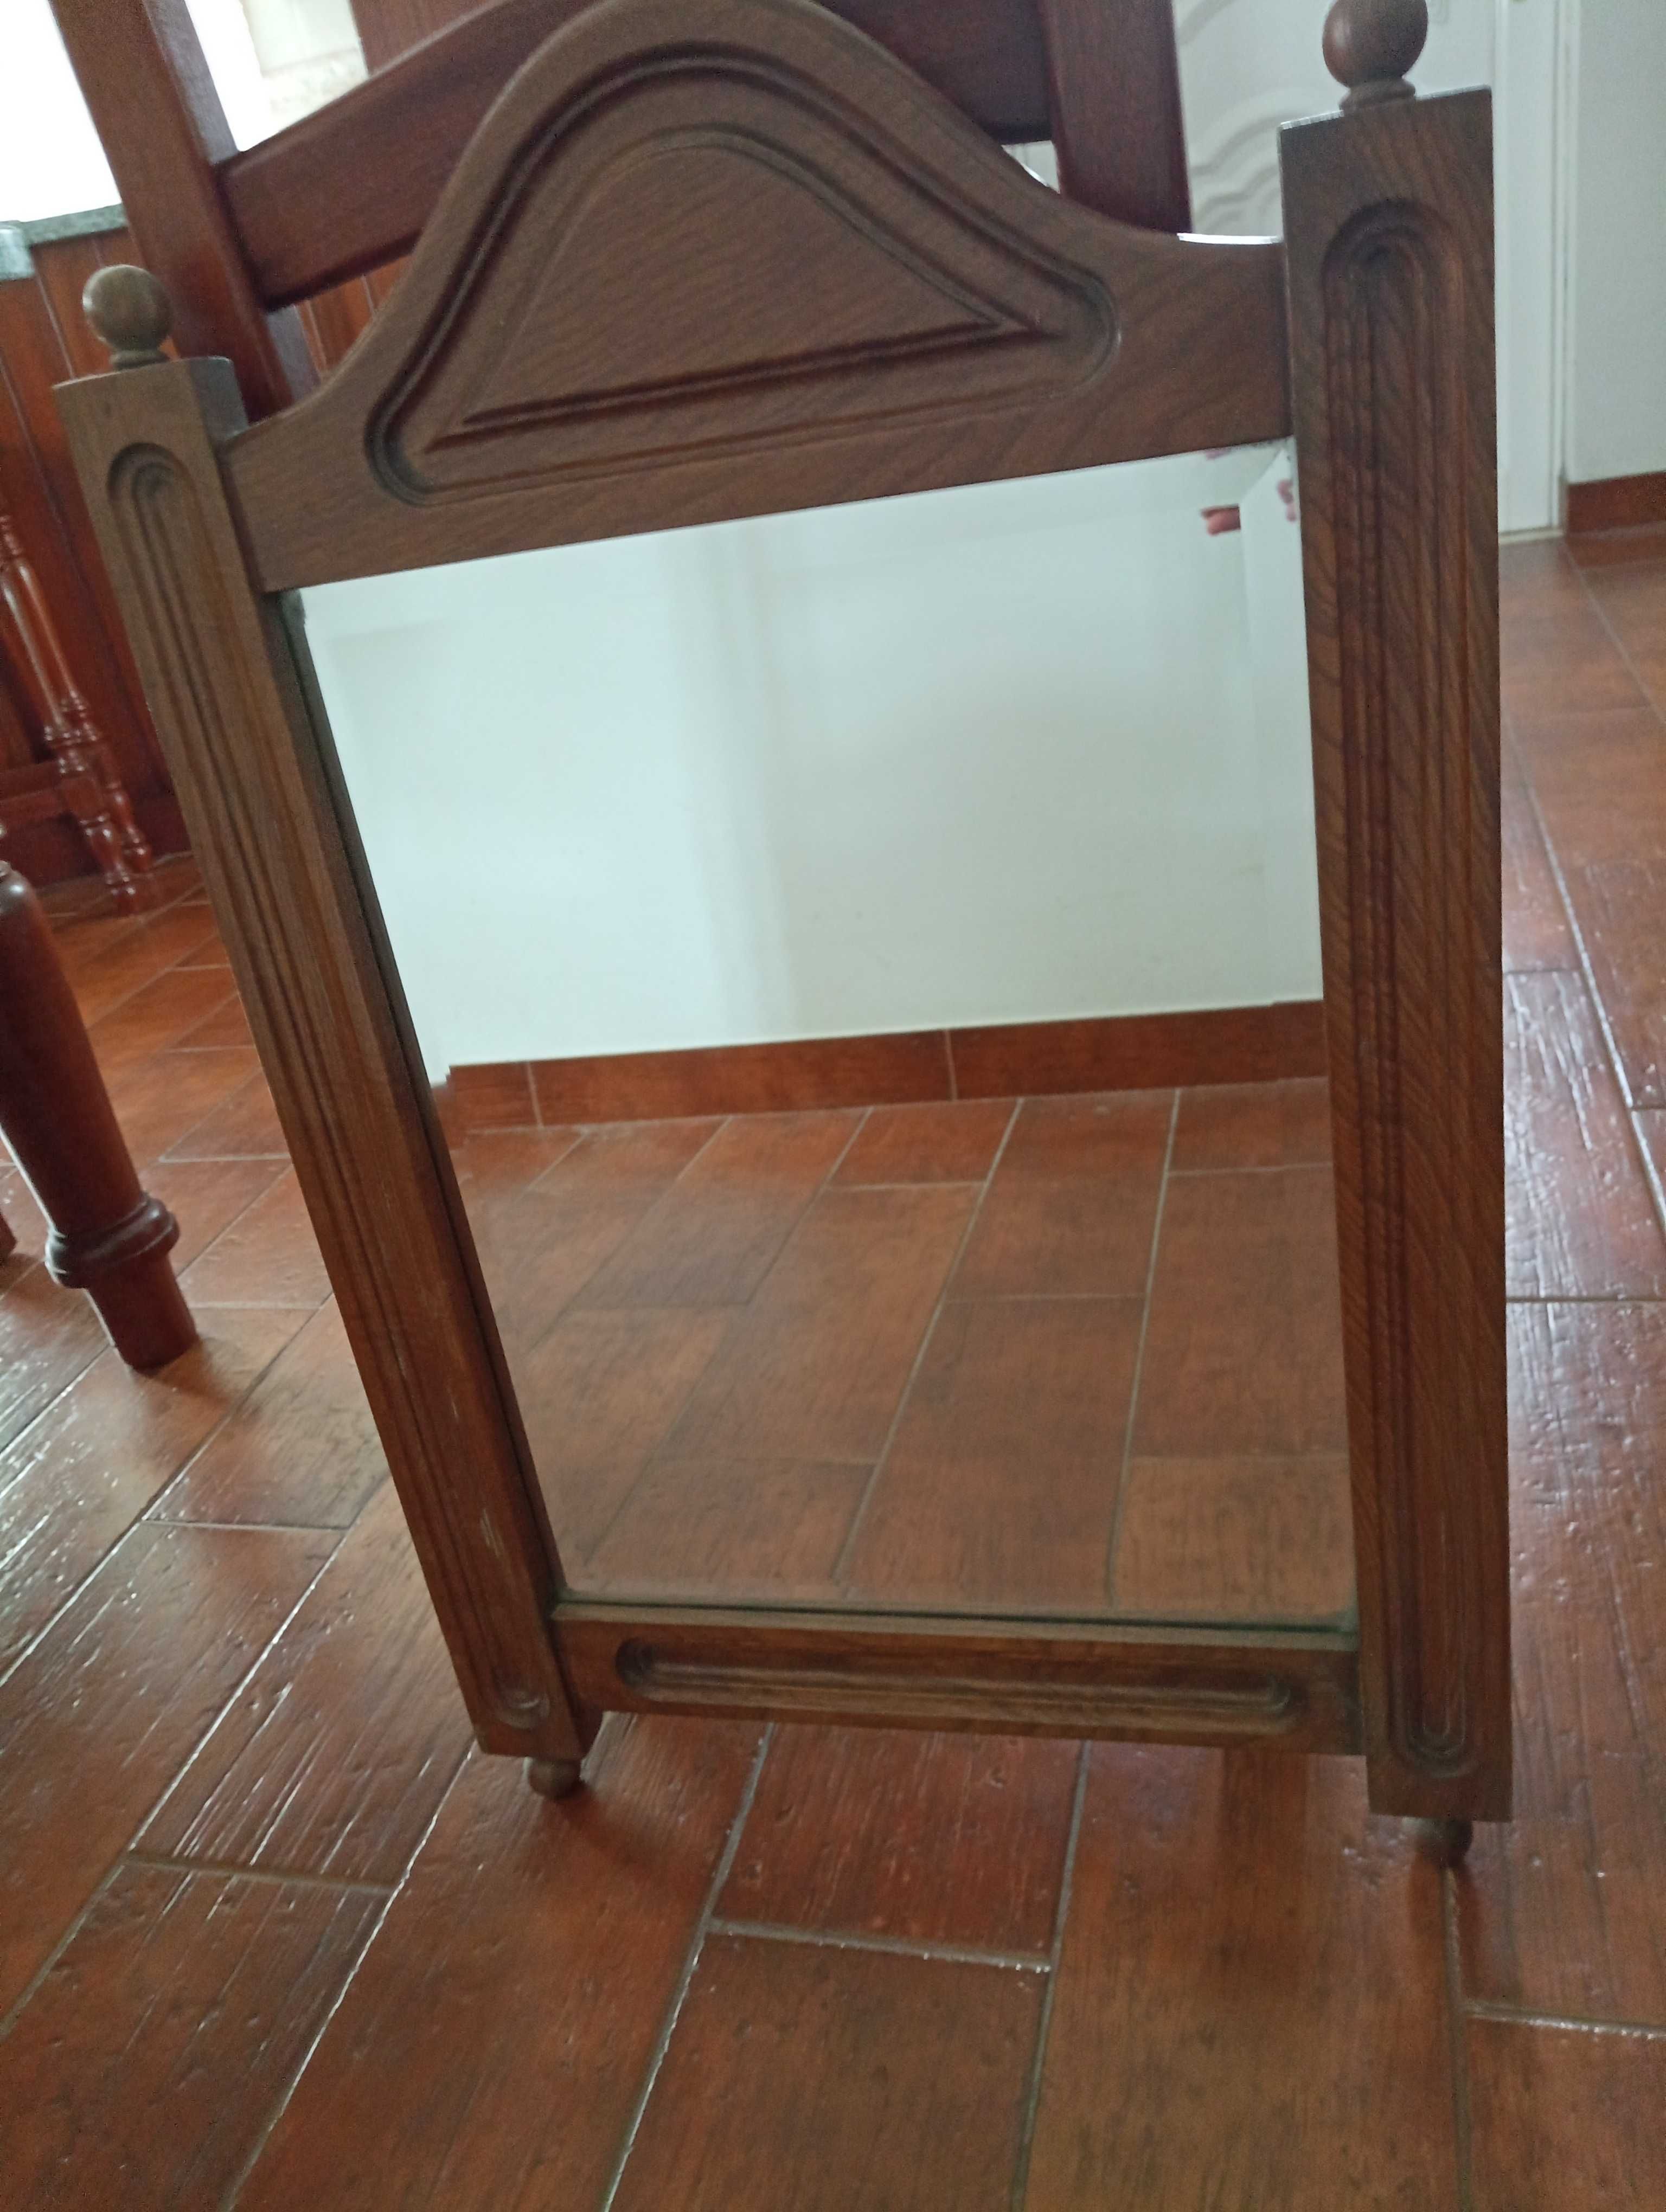 Espelho de madeira